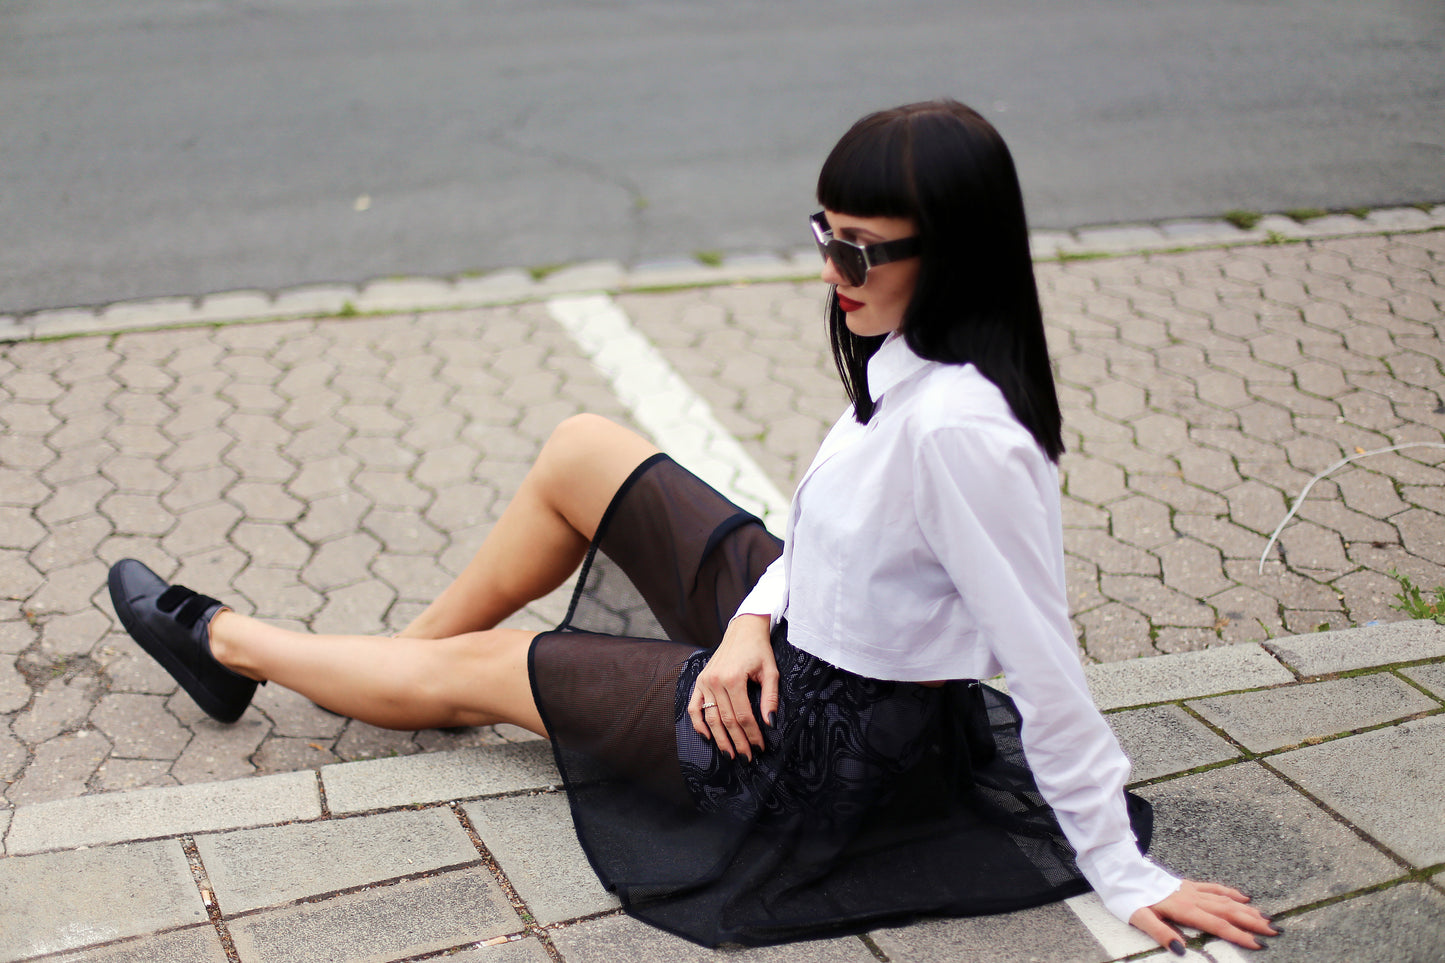 Agnes Short Skirt Noir